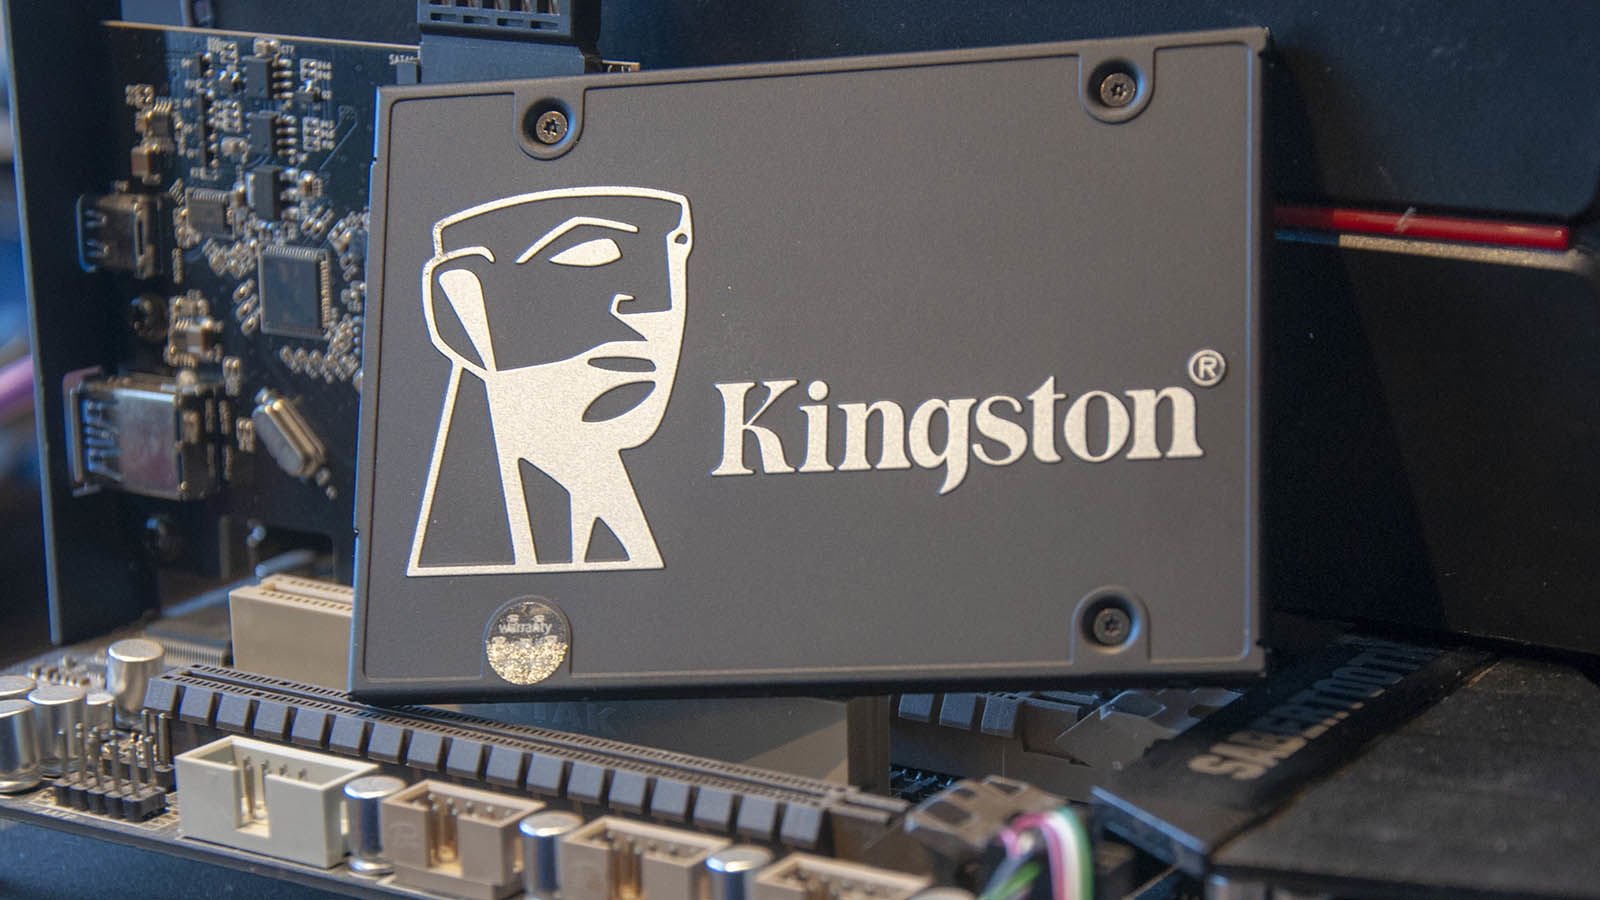 Kingston kc600 review